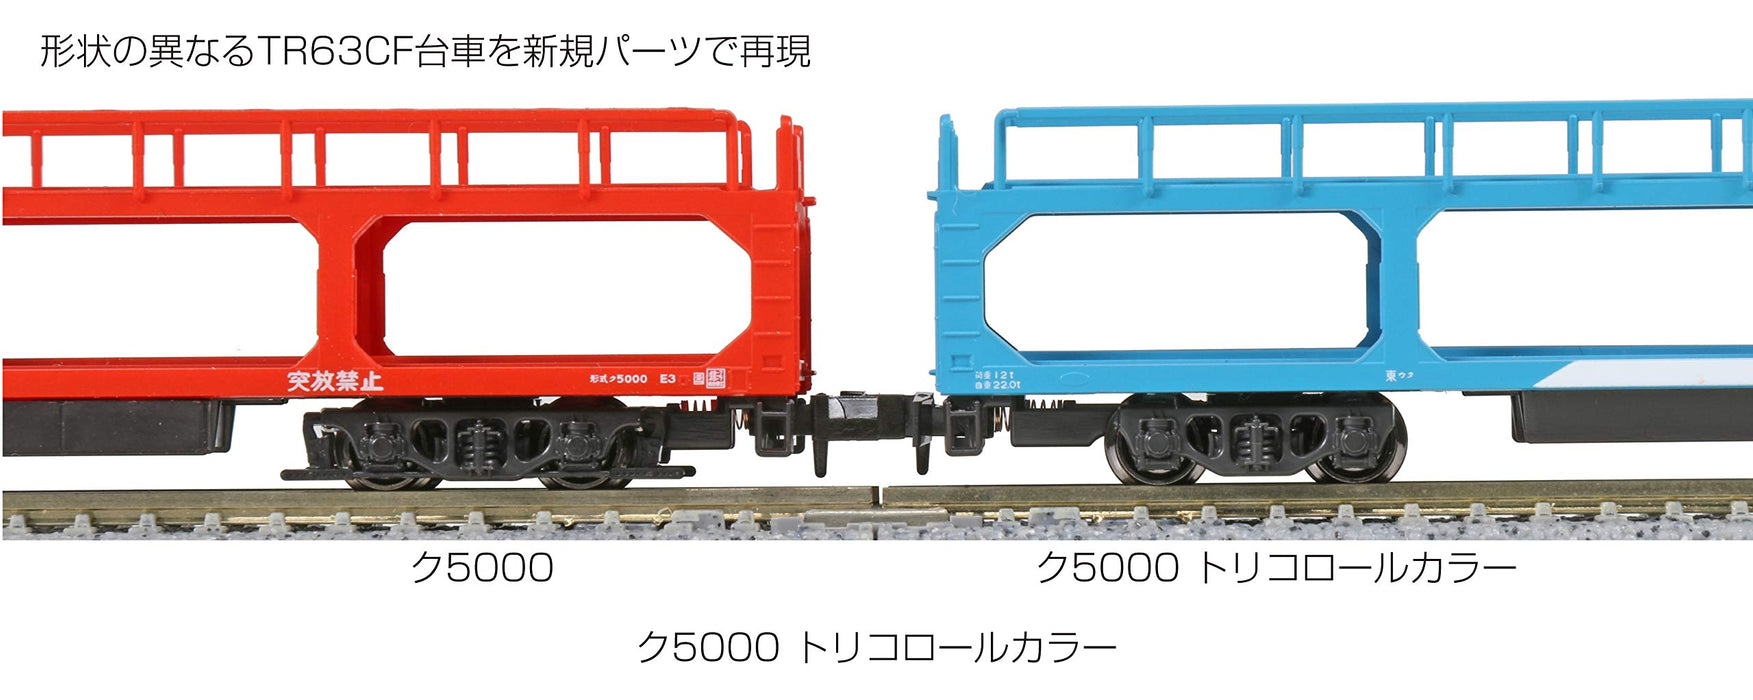 Kato N Gauge 8-Car Set Ku5000 Tricolor Railway Model Wagon de marchandises 10-1603